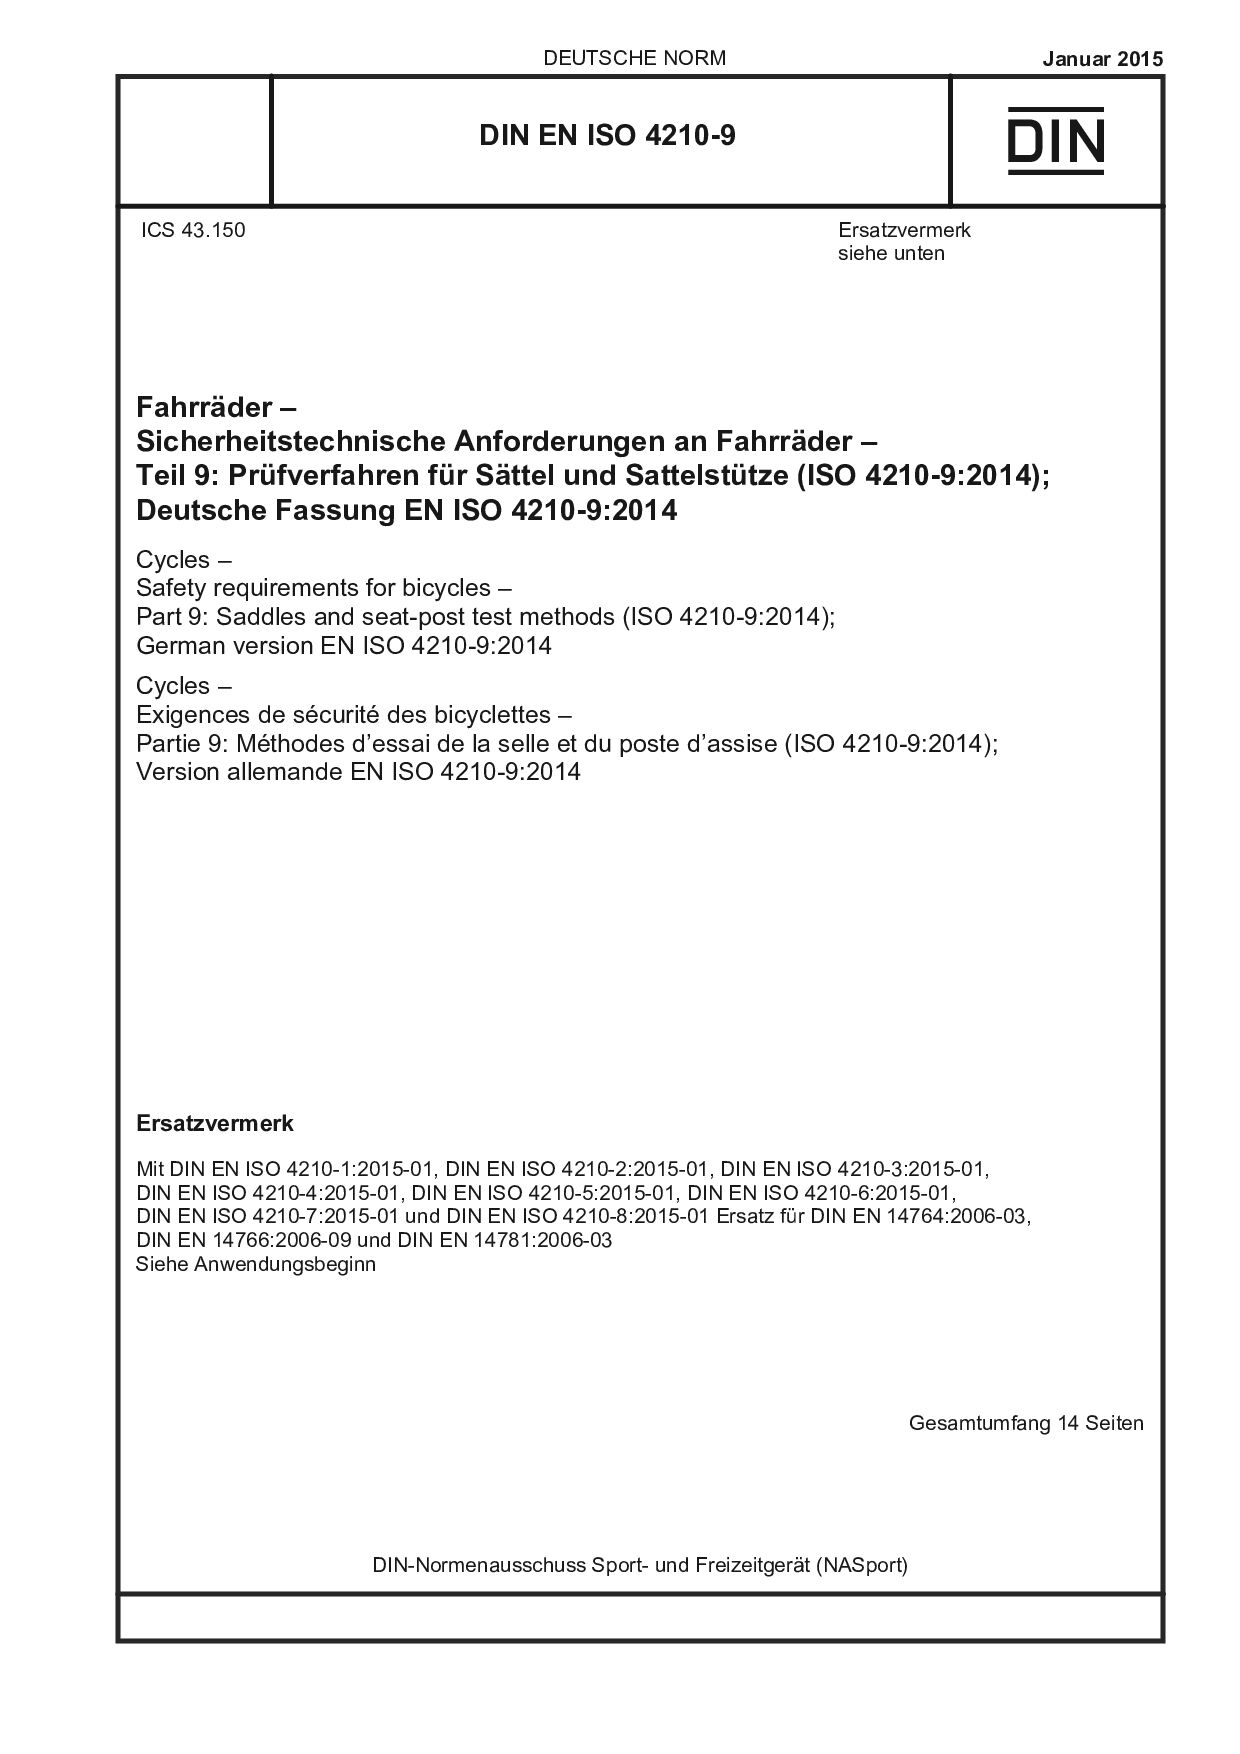 DIN EN ISO 4210-9:2015